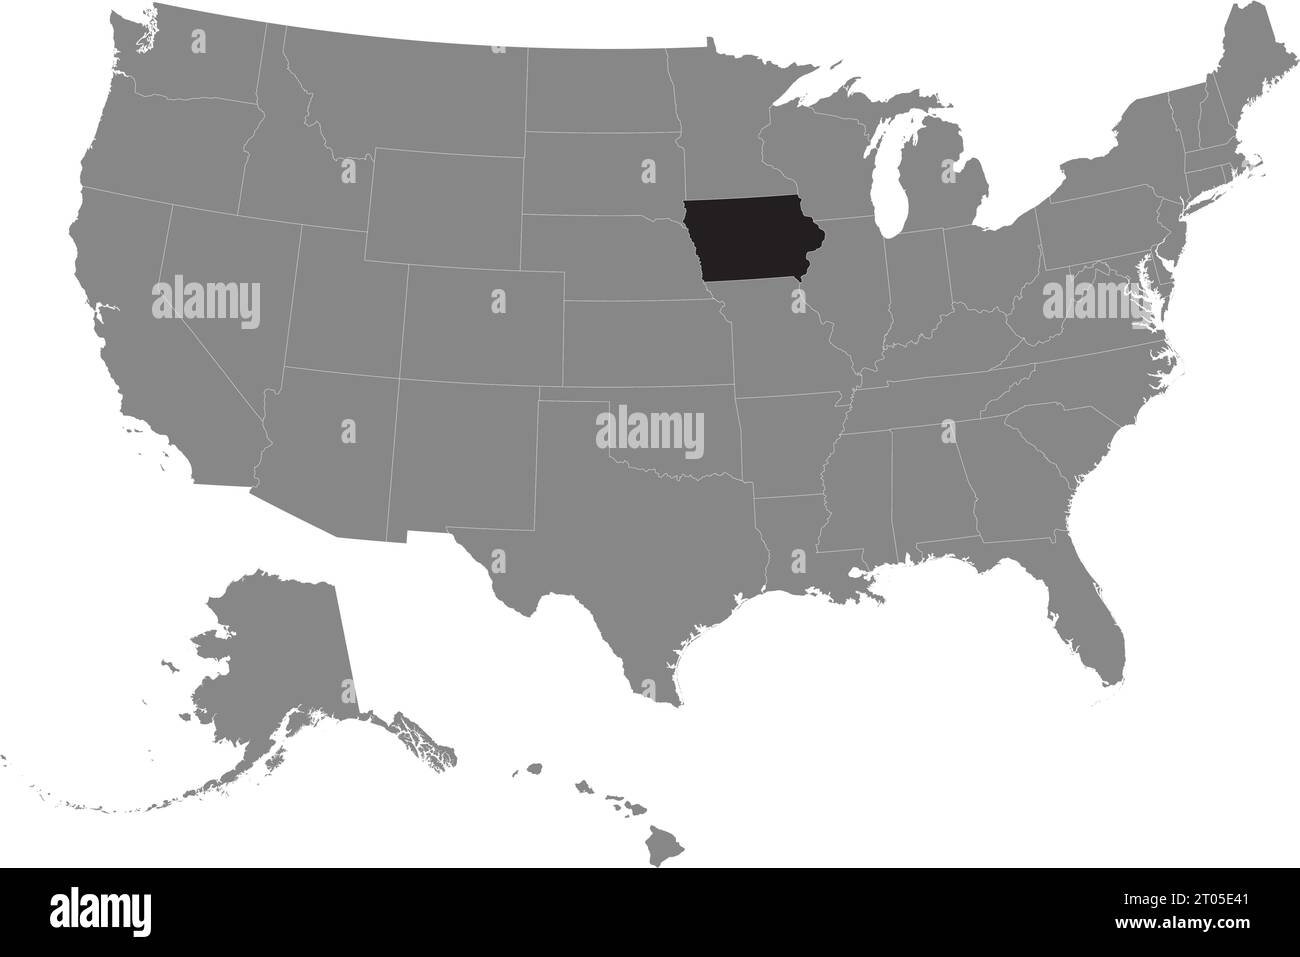 Schwarze CMYK-Bundeskarte von IOWA in detaillierter grauer, leerer politischer Karte der Vereinigten Staaten von Amerika auf transparentem Hintergrund Stock Vektor